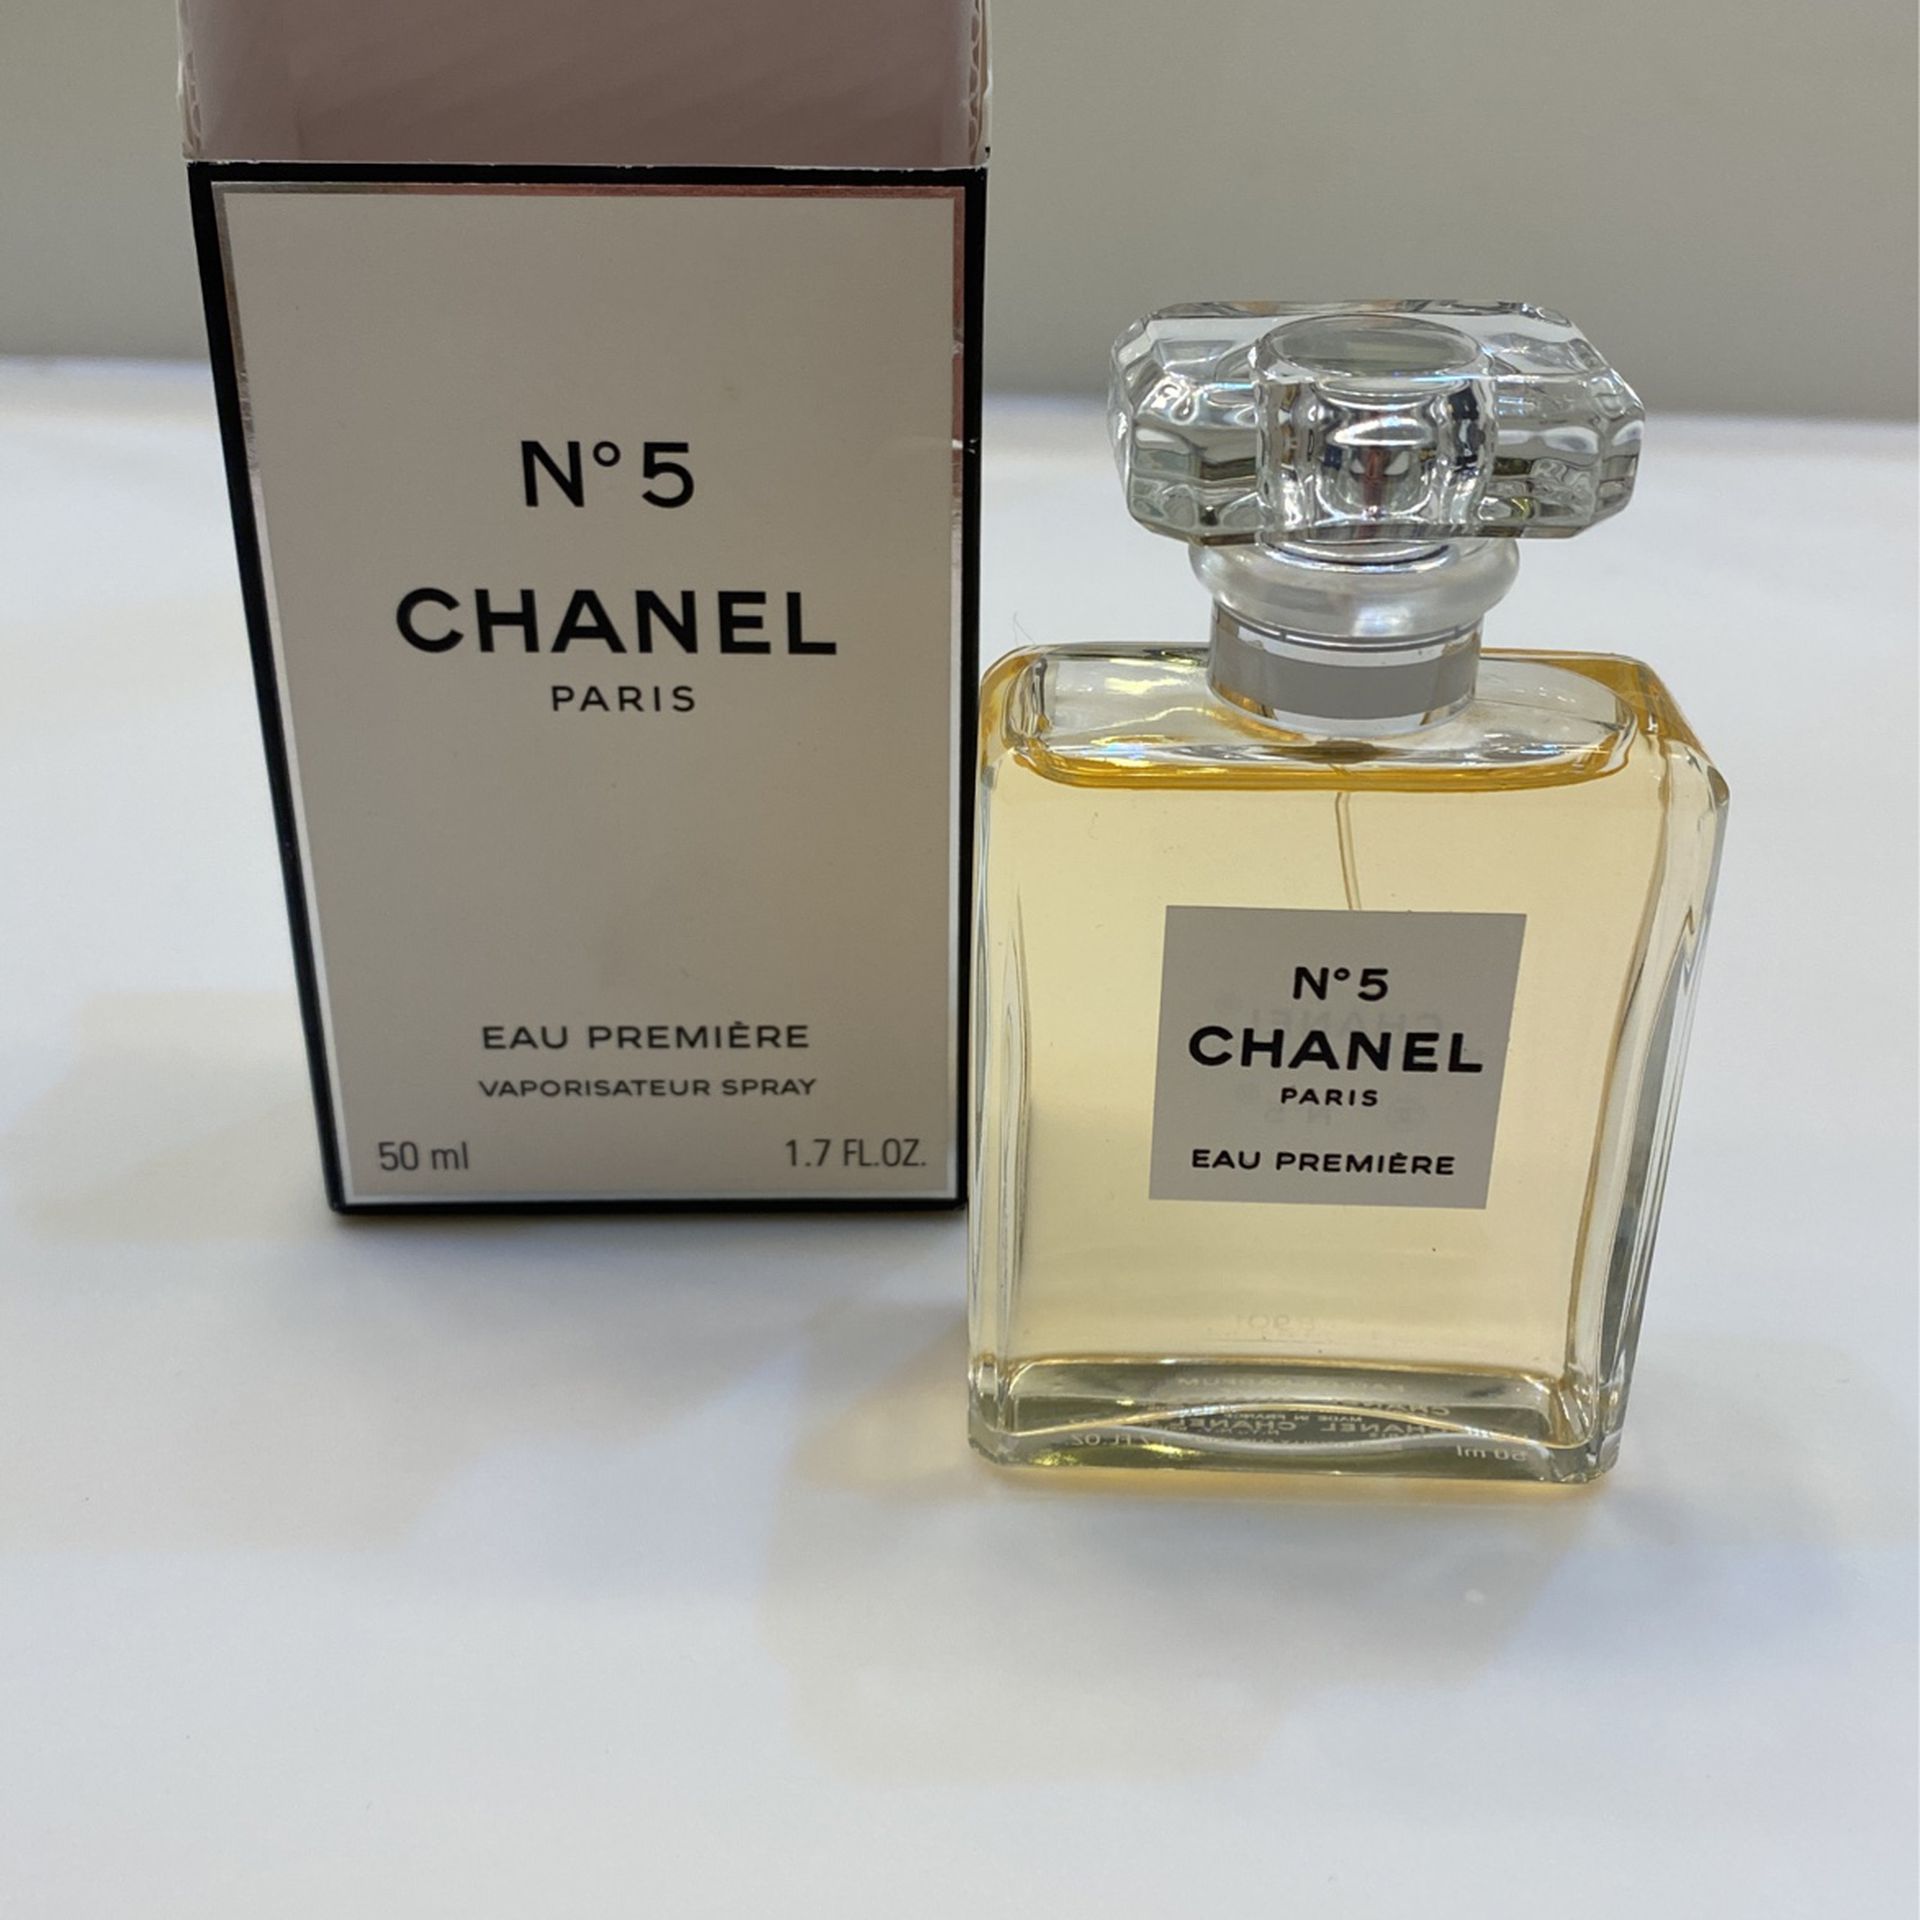 1.7 oz Chanel No. 5 Eau Premiére